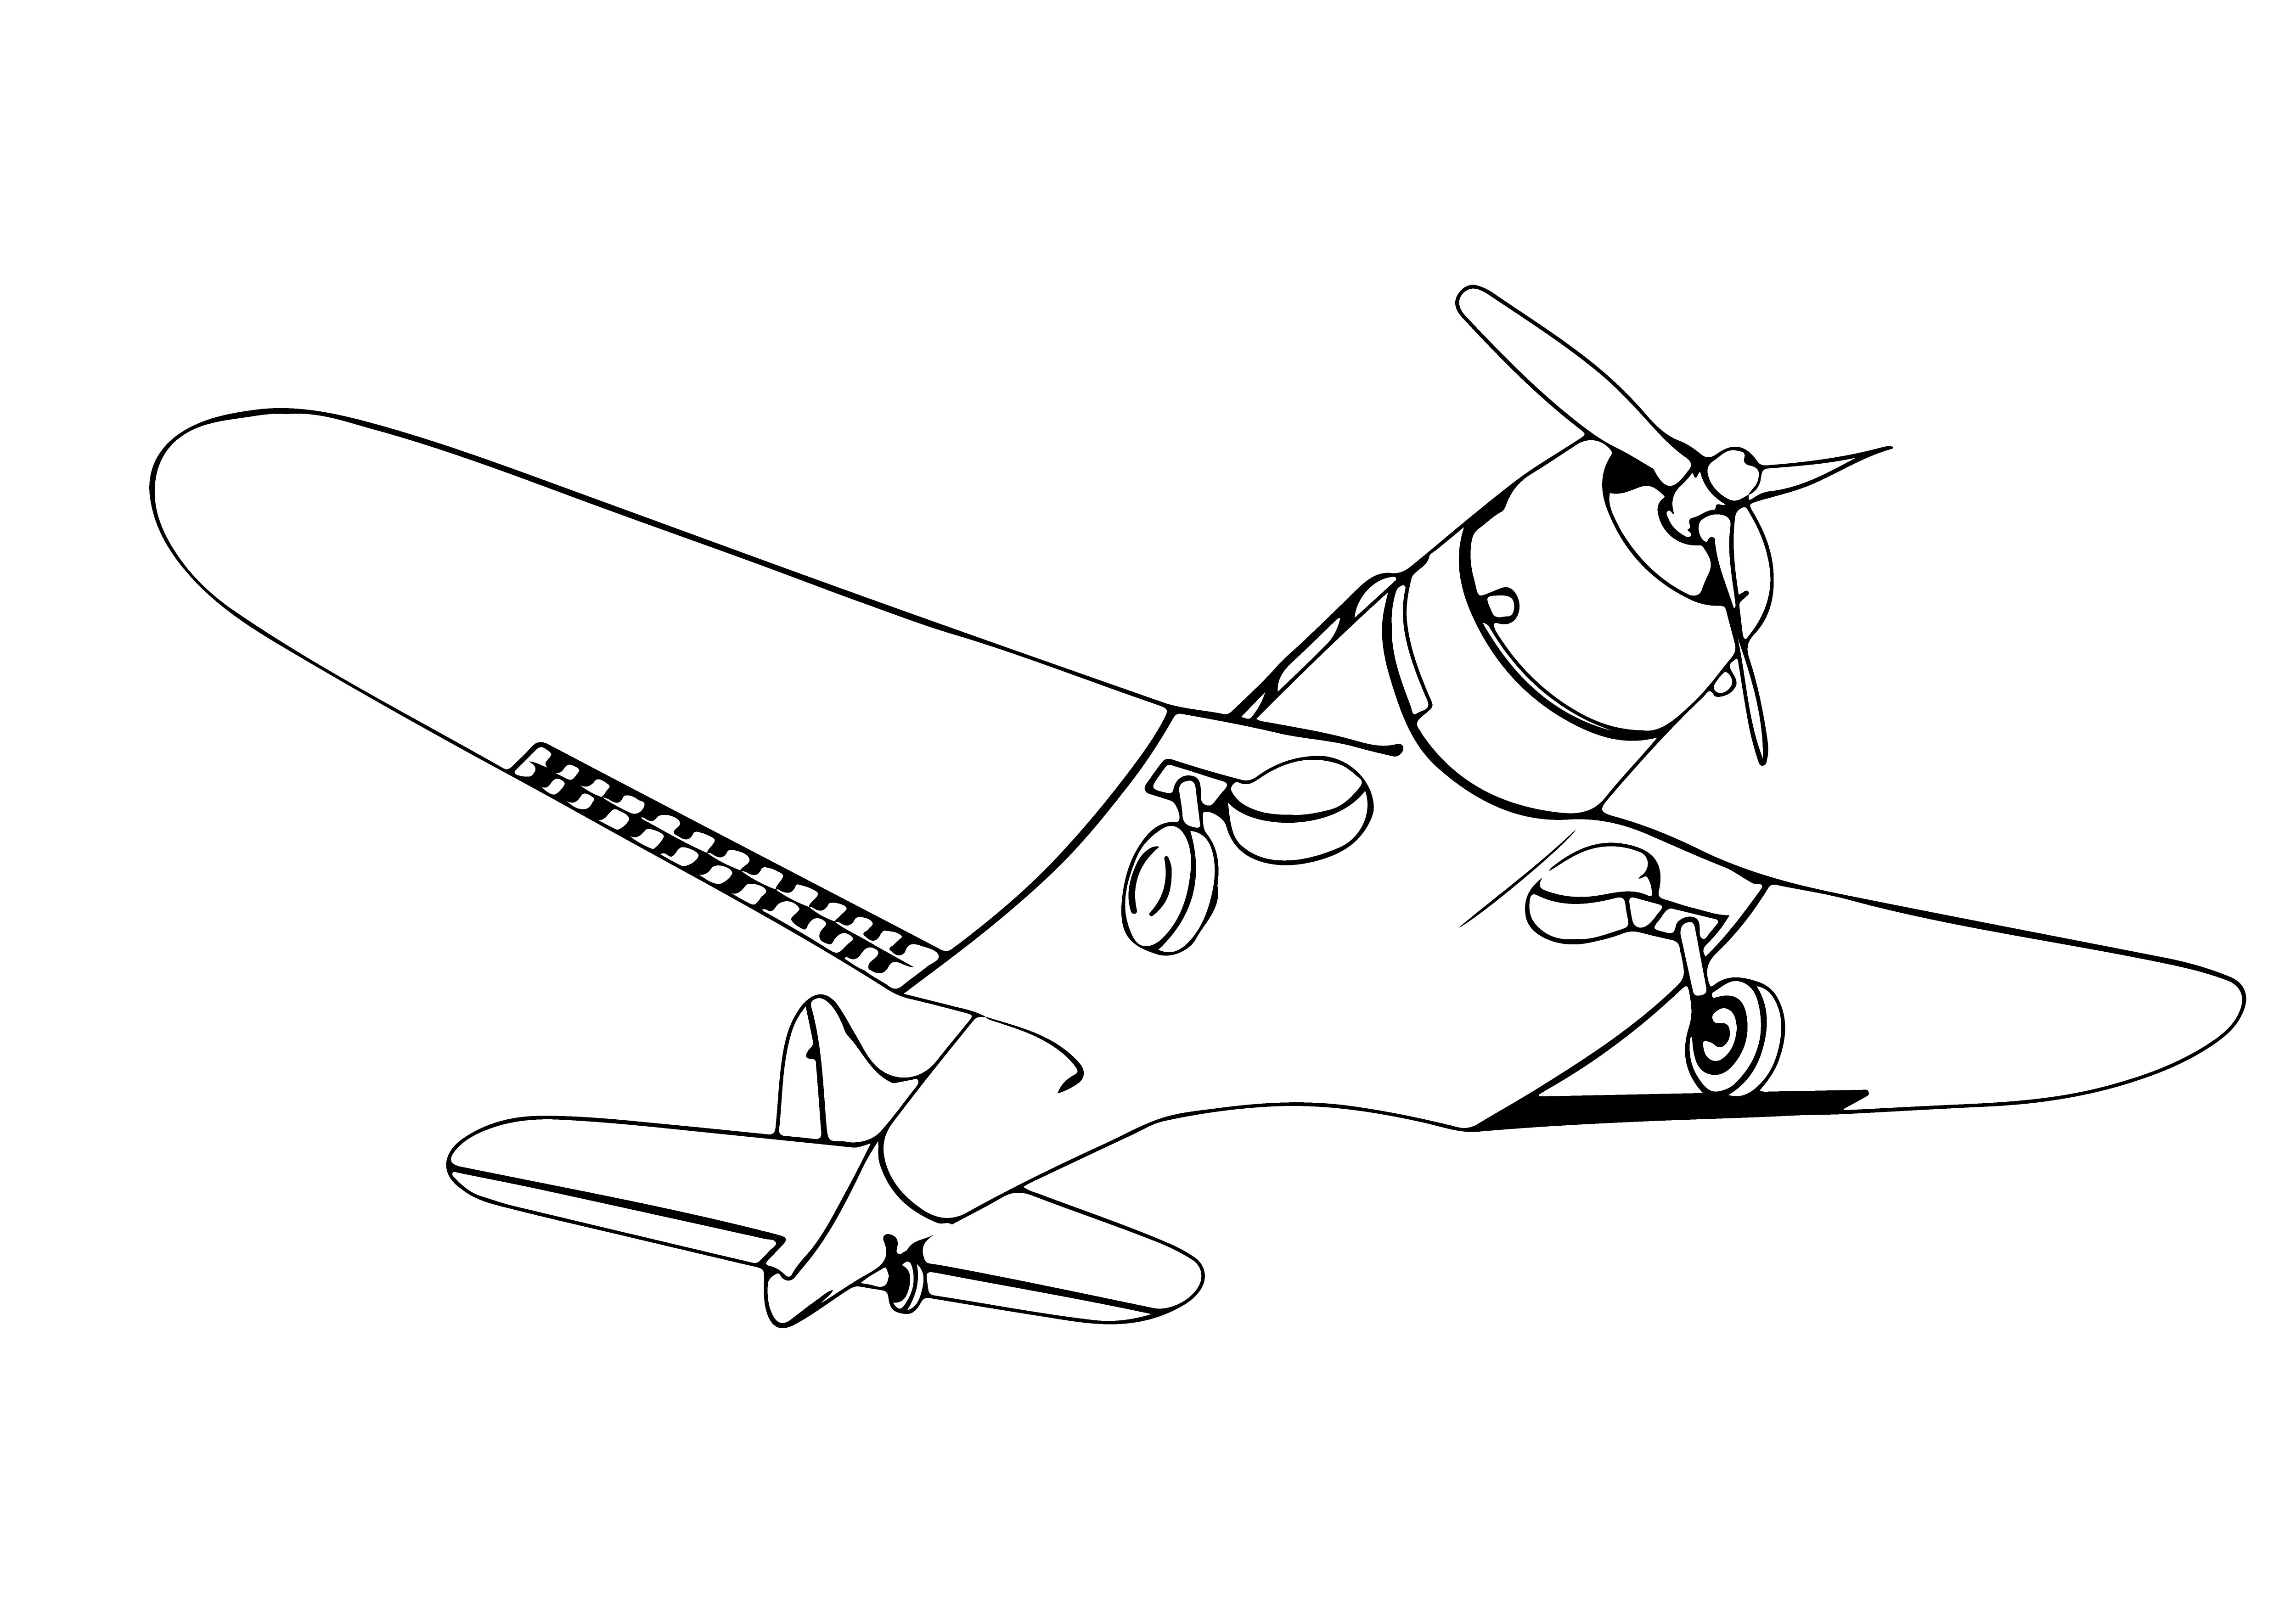 Раскраска самолет «Скорость и свобода» формата А4 в высоком качестве